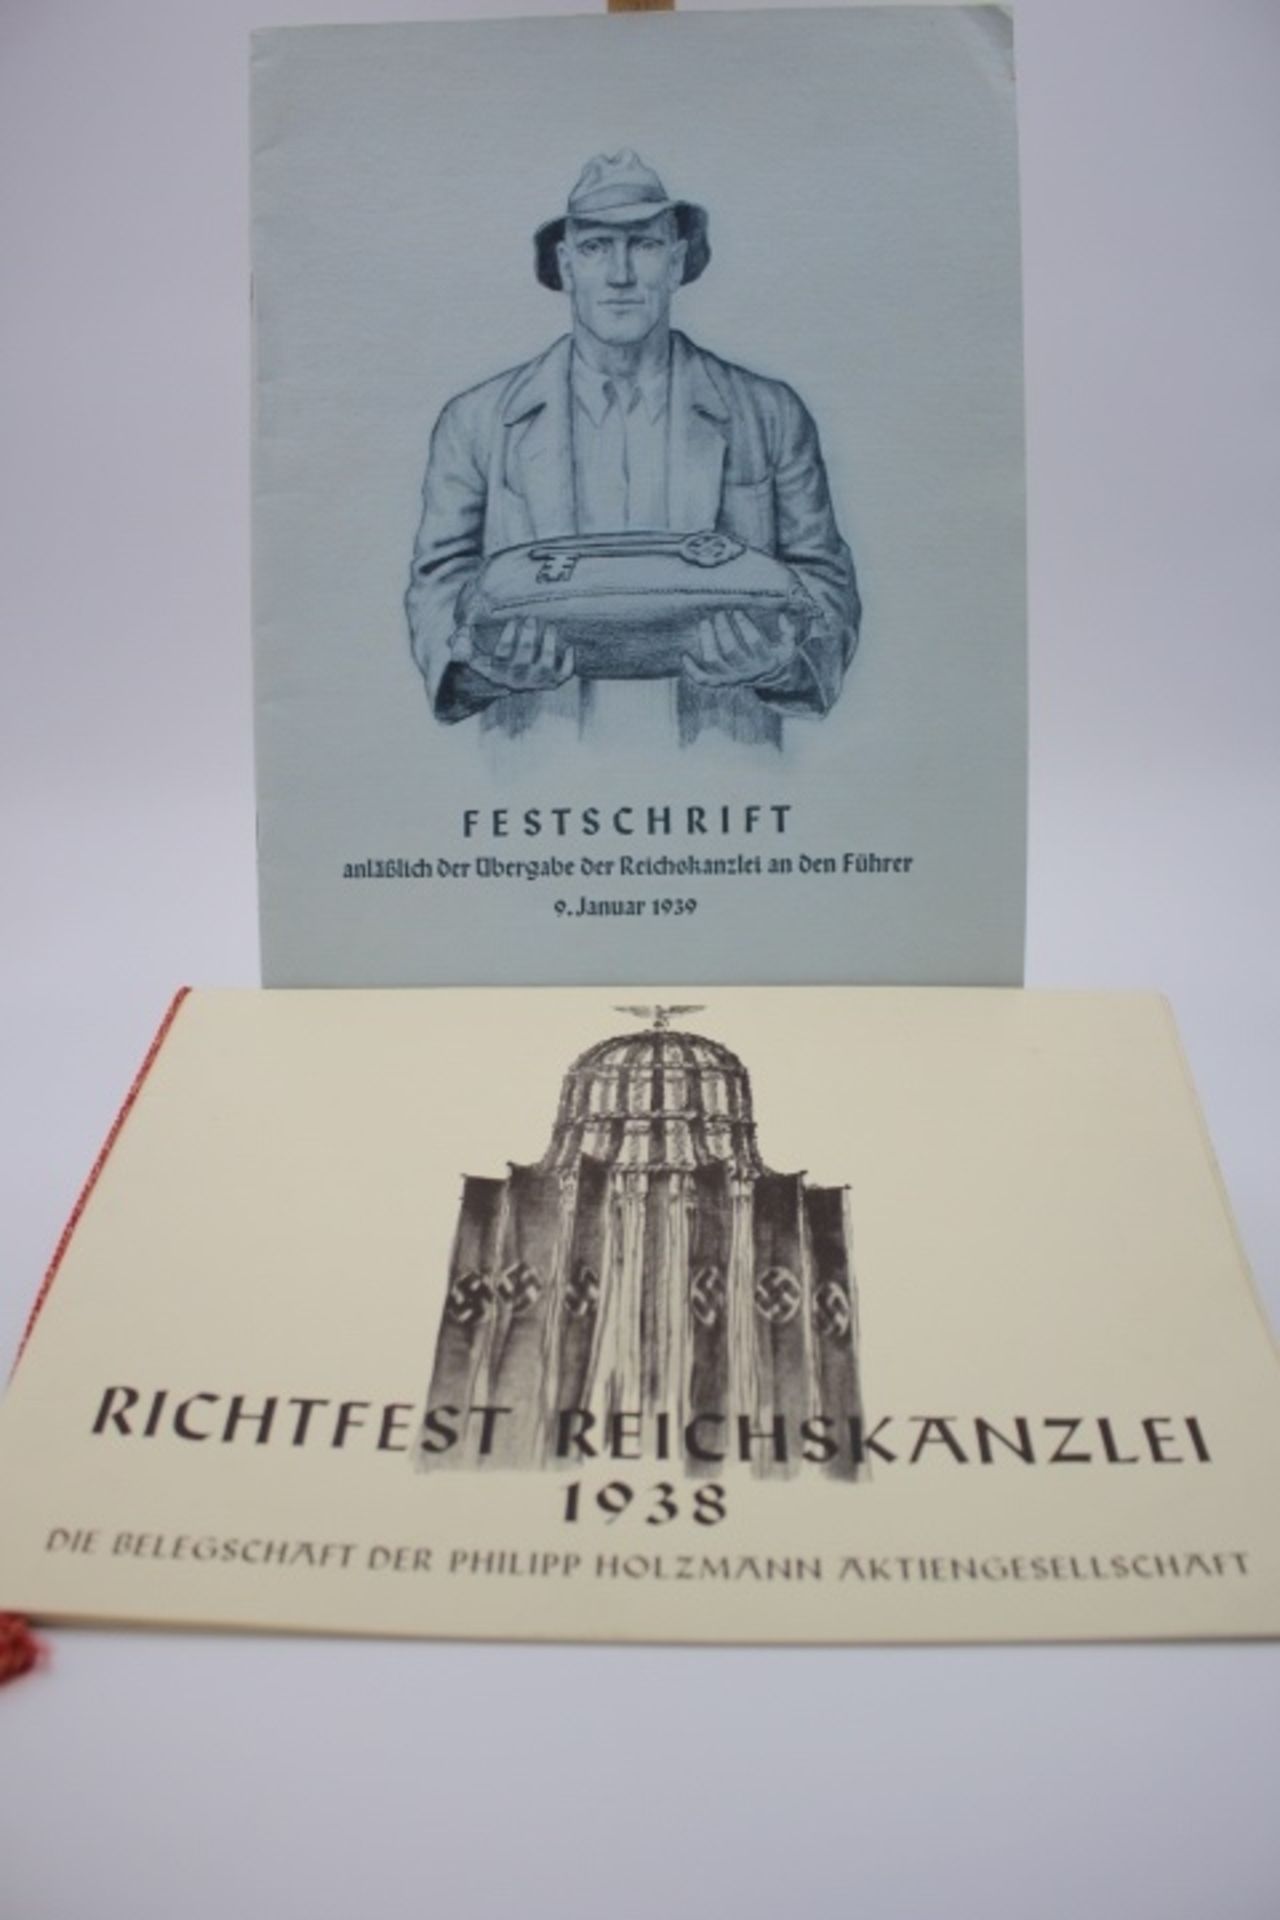 Festschrift anläßlich der Übergabe an den Führer 9.Januar 1939 Richtfest Reichskanzlei 1938 Die